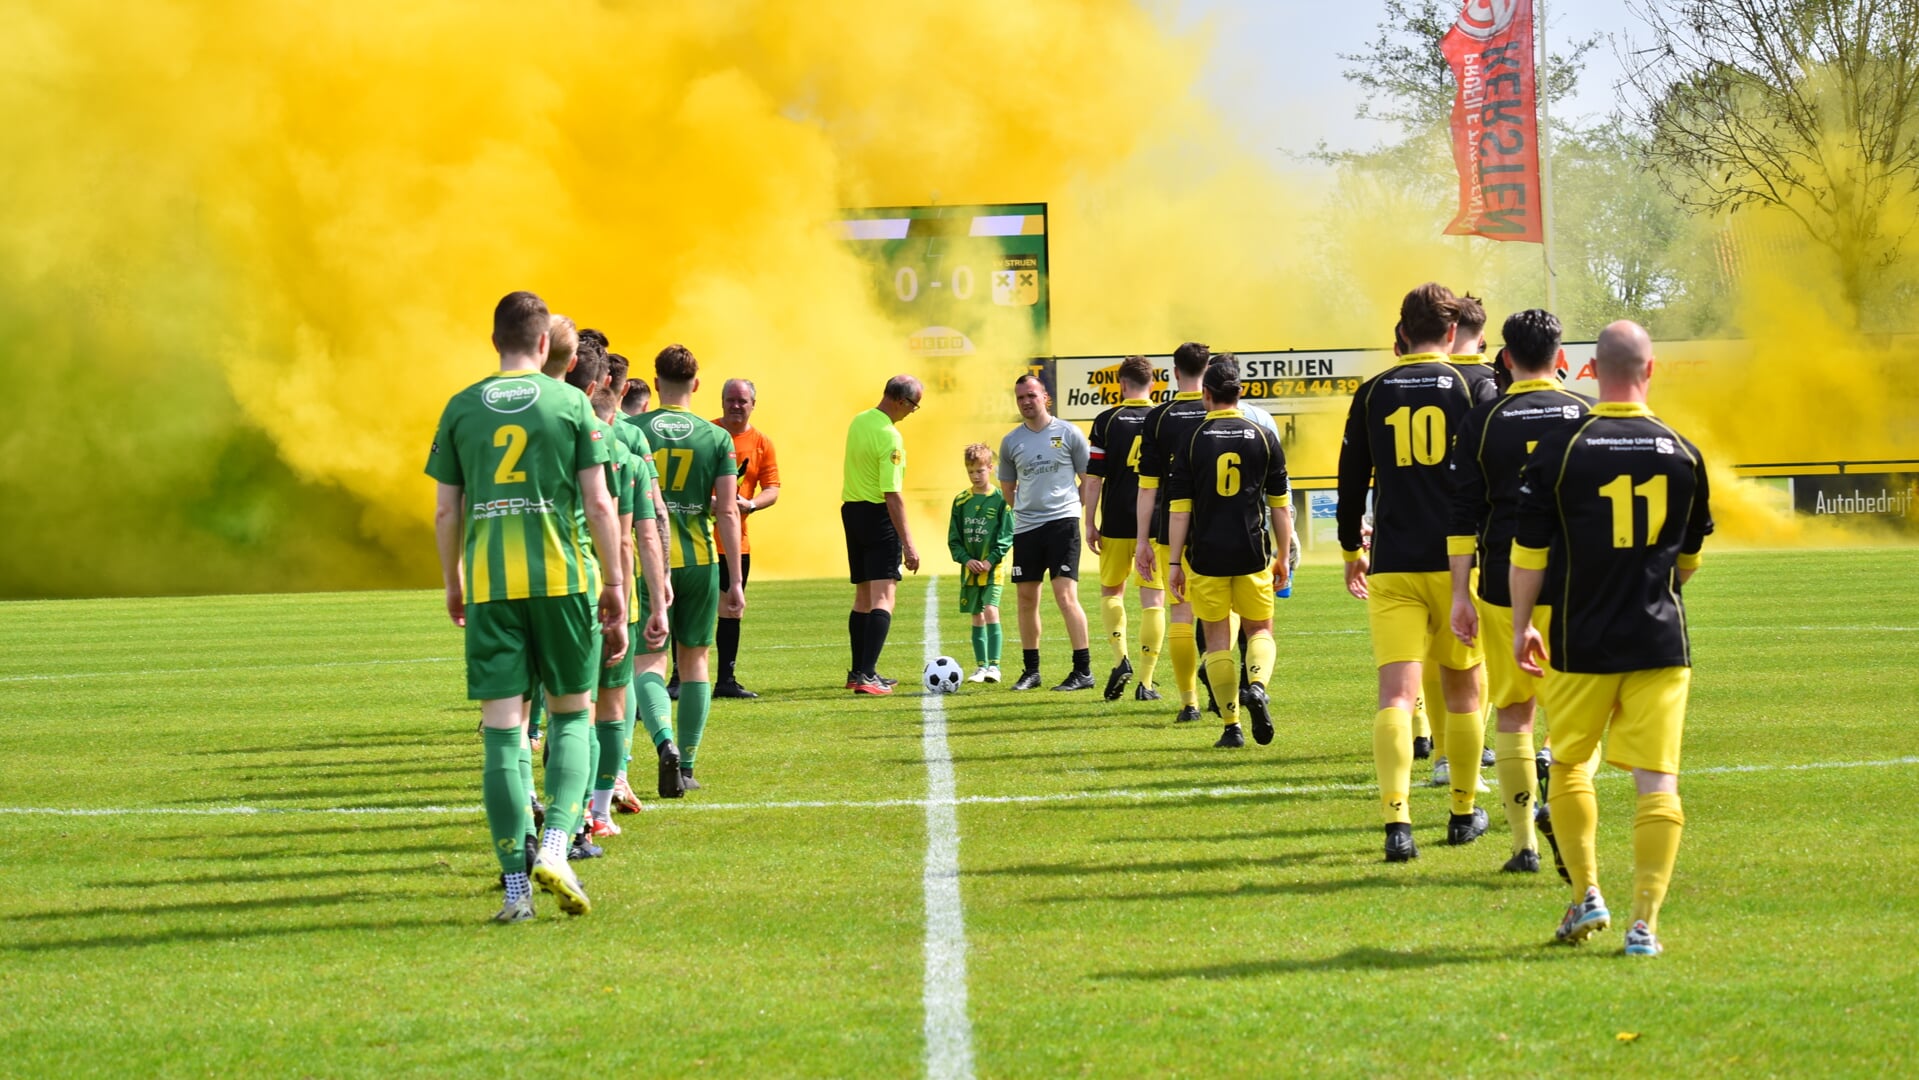 Mooie sfeer bij aanvang derby FC Binnenmaas tegen Strijen. (foto: Michiel Manten /PR FC Binnenmaas)